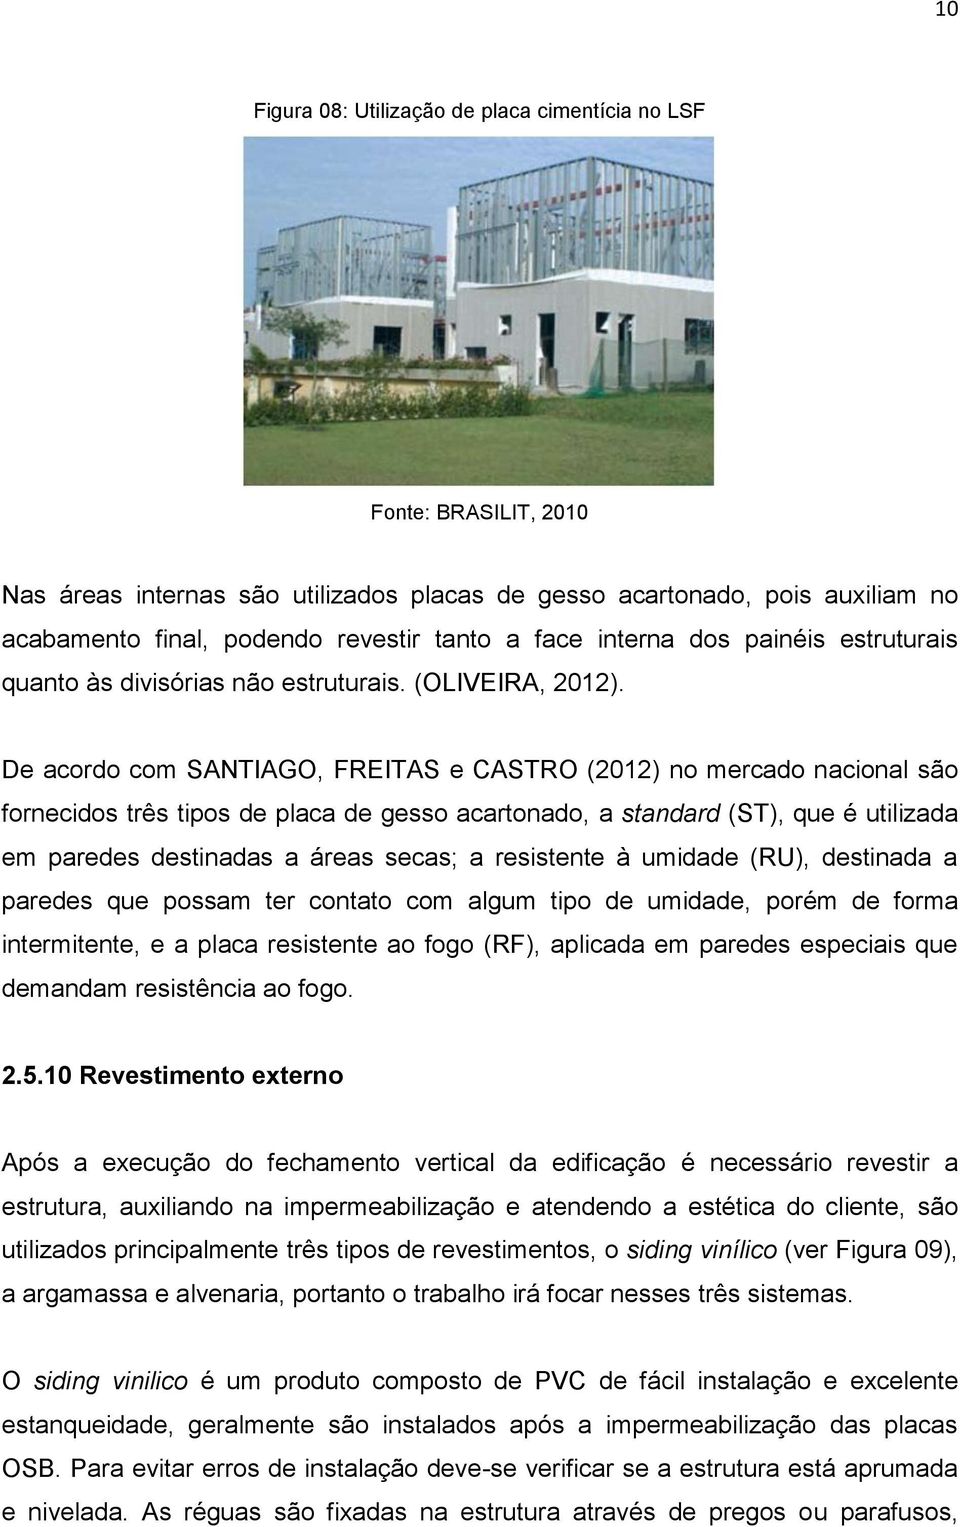 De acordo com SANTIAGO, FREITAS e CASTRO (2012) no mercado nacional são fornecidos três tipos de placa de gesso acartonado, a standard (ST), que é utilizada em paredes destinadas a áreas secas; a